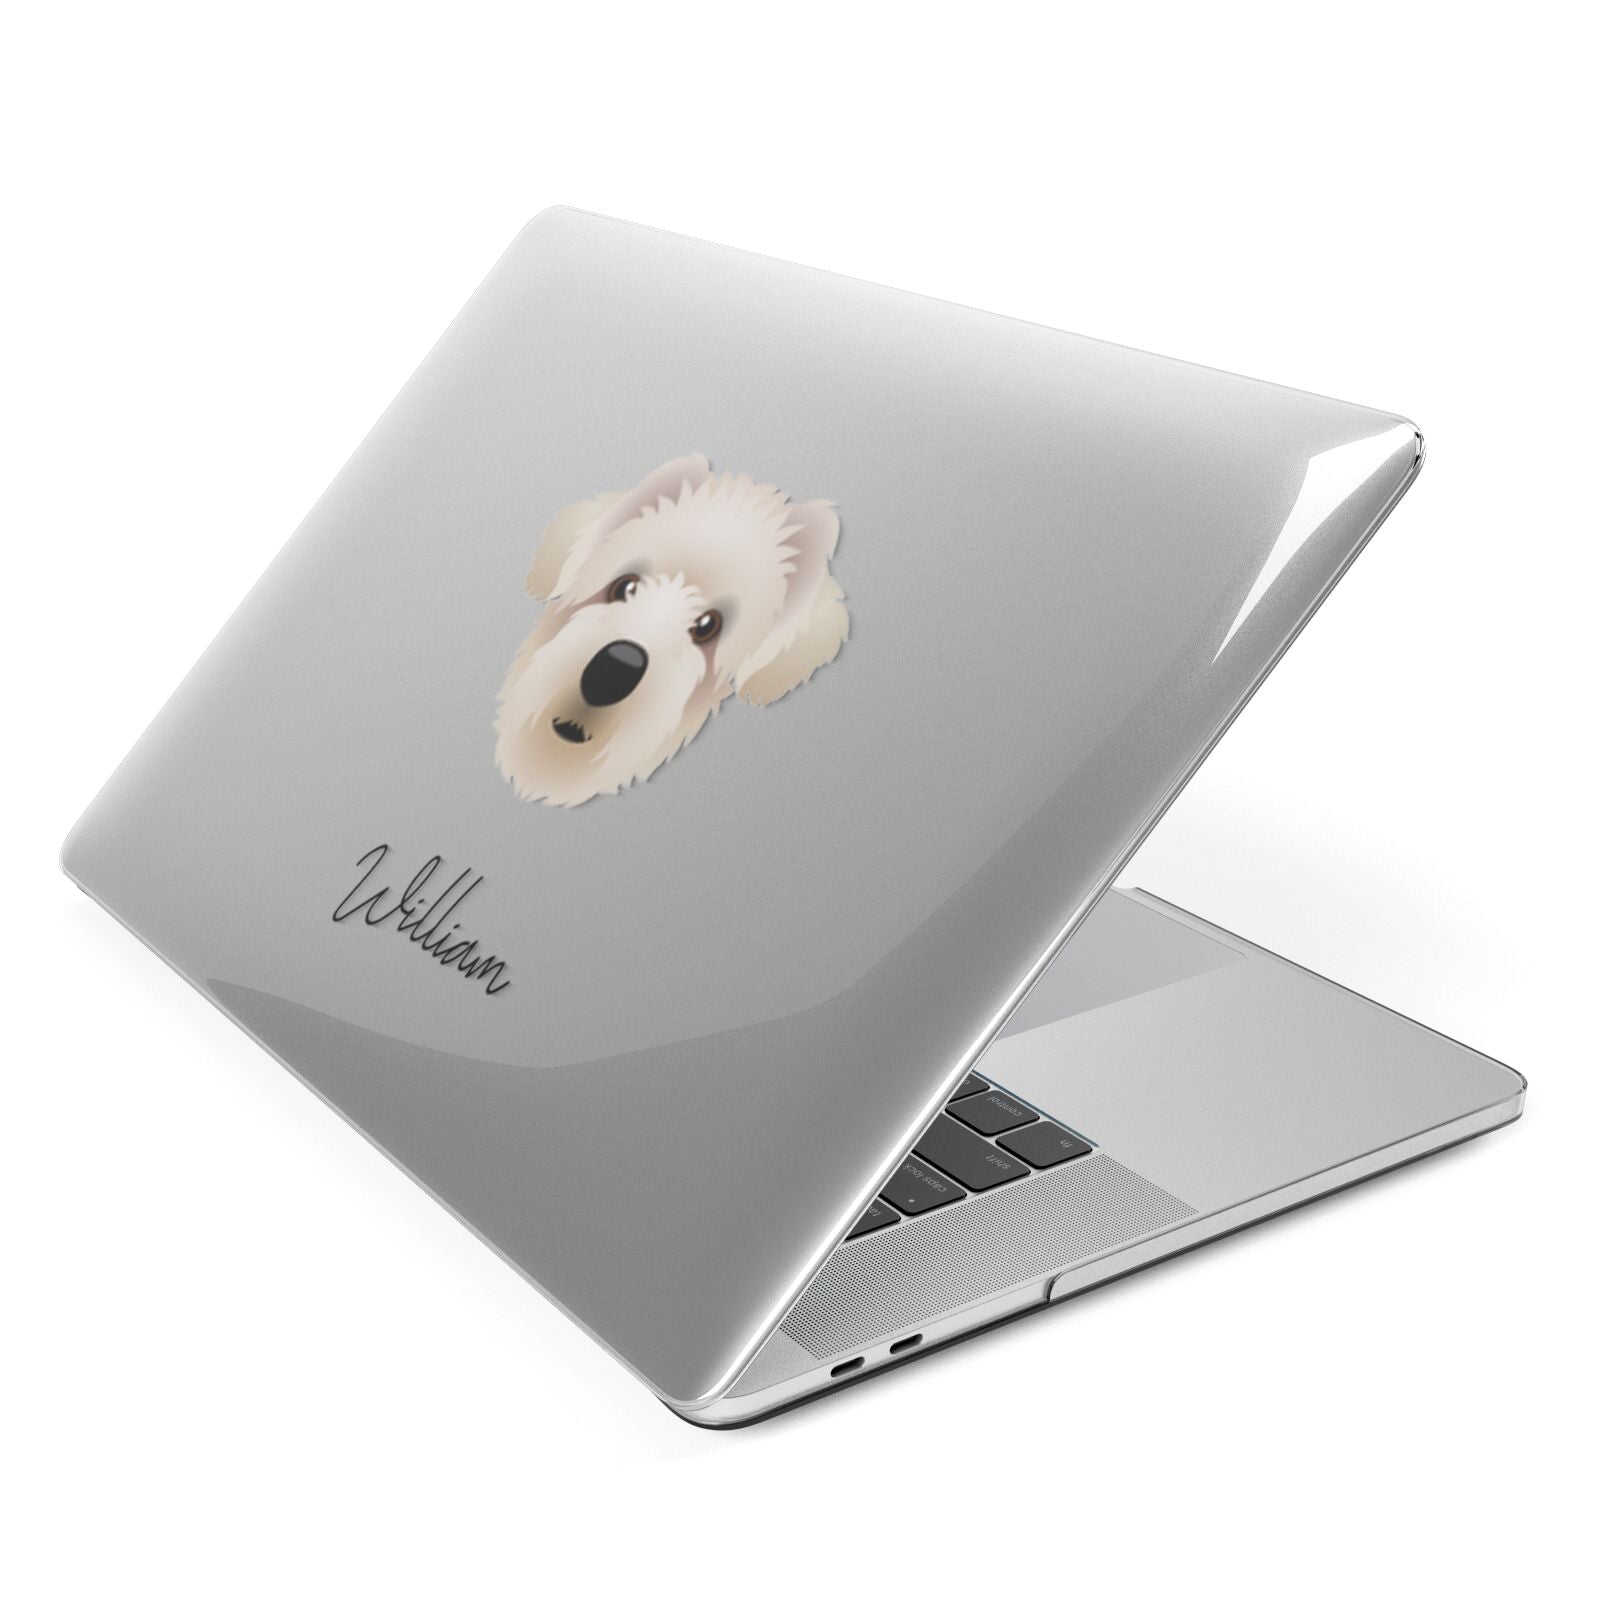 Westiepoo Personalised Apple MacBook Case Side View